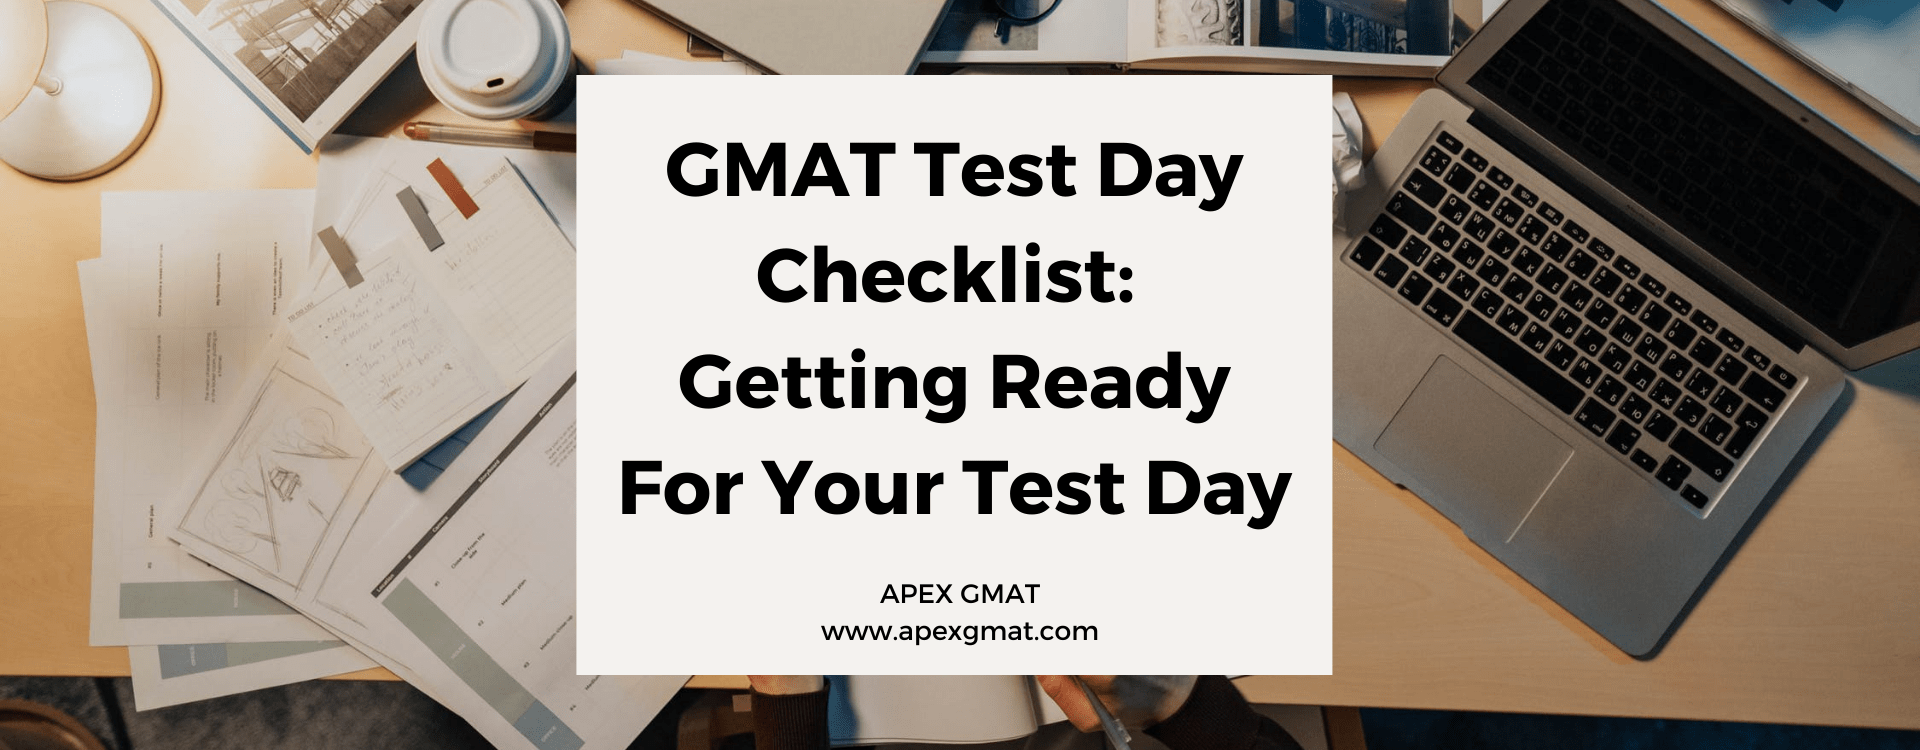 GMAT Test Day Checklist